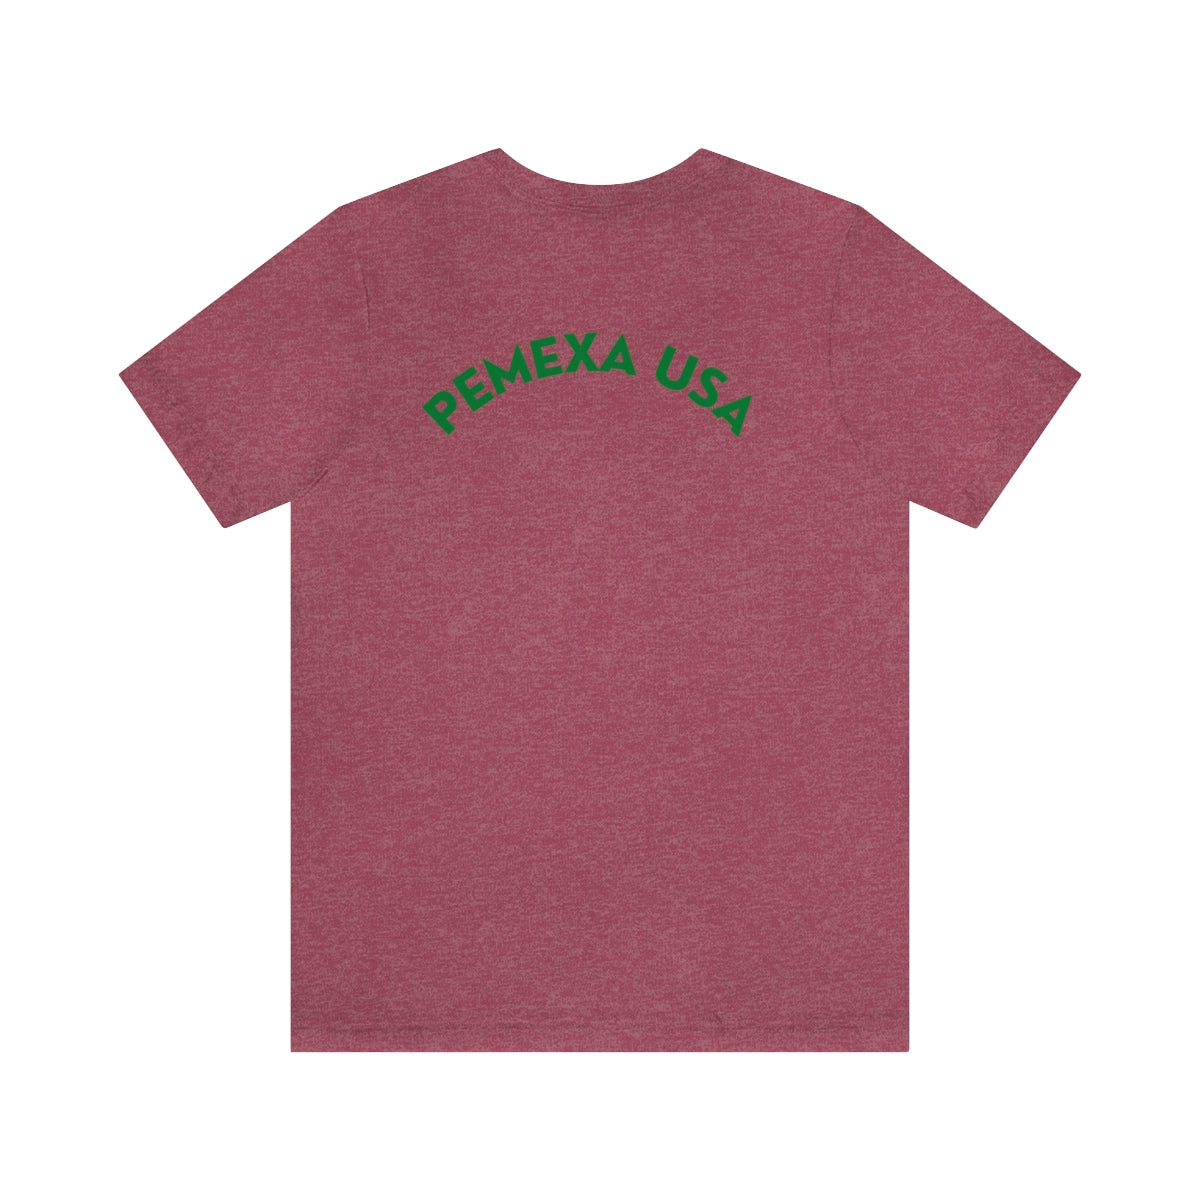 Sample Pemexa Unisex Jersey Short Sleeve Tee